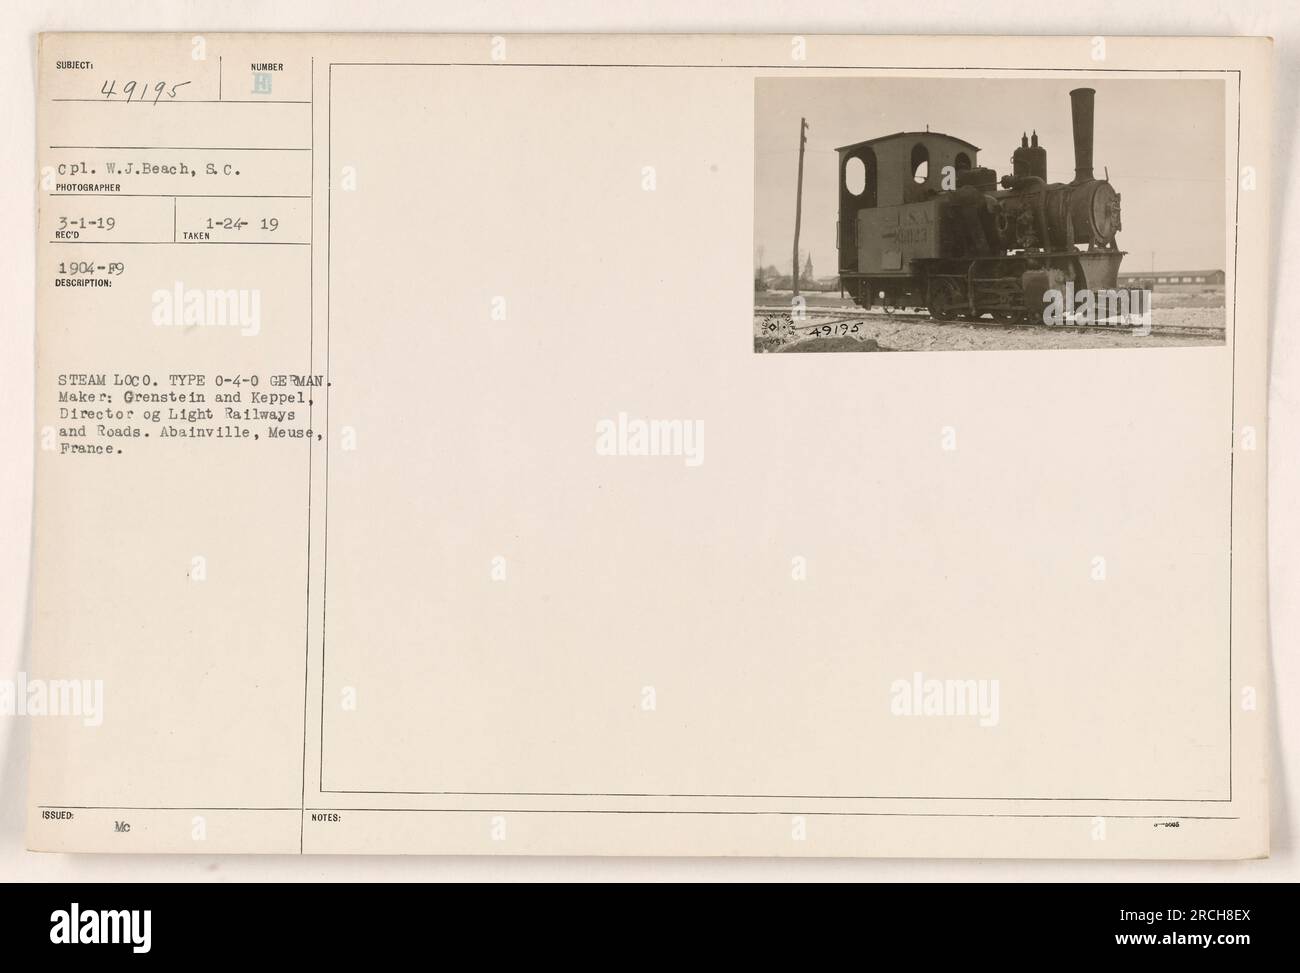 Locomotiva a vapore tedesca, tipo 0-4-0, prodotta da Orenstein e Keppel. La locomotiva si trova ad Abainville, Meuse, in Francia. La foto è stata scattata da CPL. W.J. E' datato 3-1-19. La data di produzione della locomotiva è compresa tra il 1904 e il 1919. Foto Stock